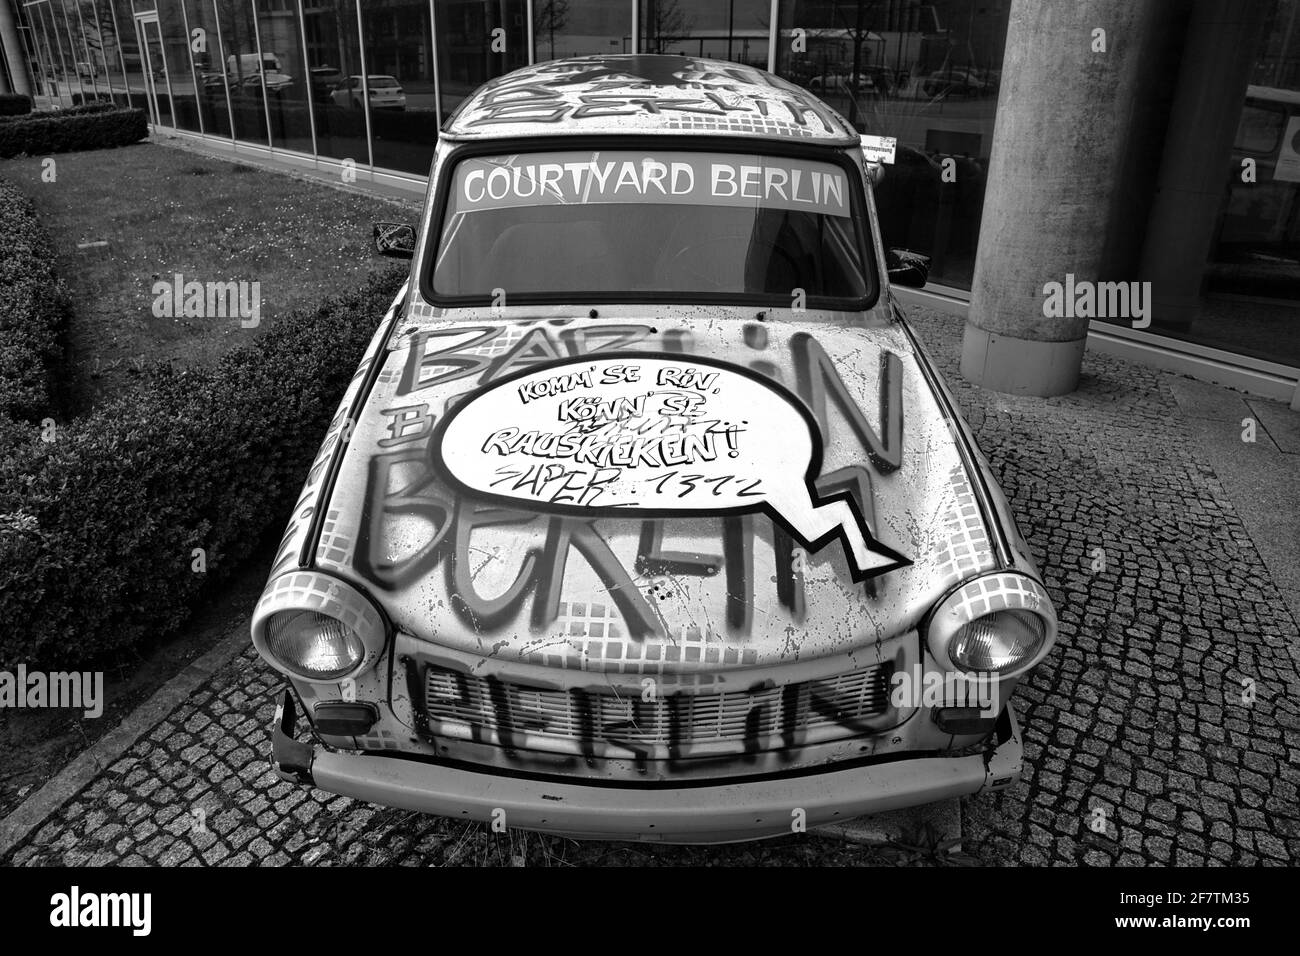 Trabant ( Trabi ) in der Axel-Springer-Str. A Berlino. Oldtimer mit künstlerischer Lackierung und Sprechblase auf der Motorhaube. Foto Stock